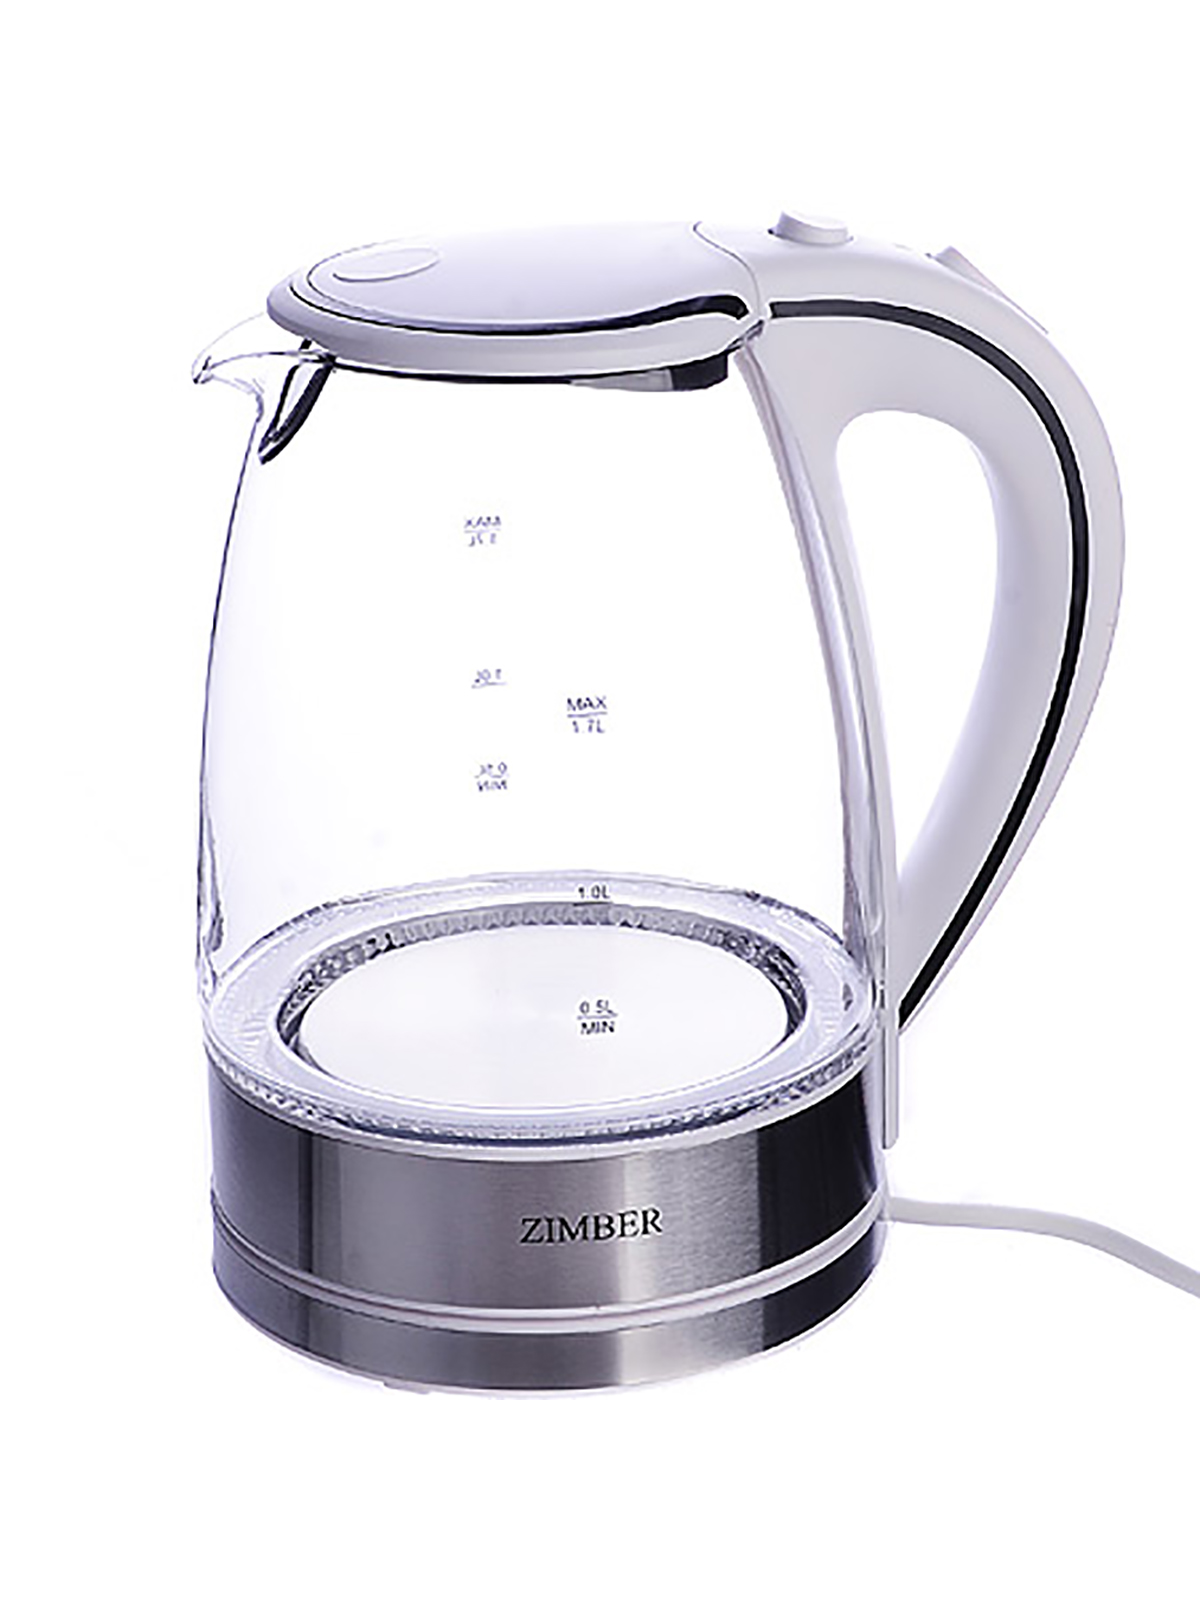 Чайник электрический Zimber ZM 11254 1.7 л прозрачный, белый чайник электрический матрёна ma 003 005410 стальной